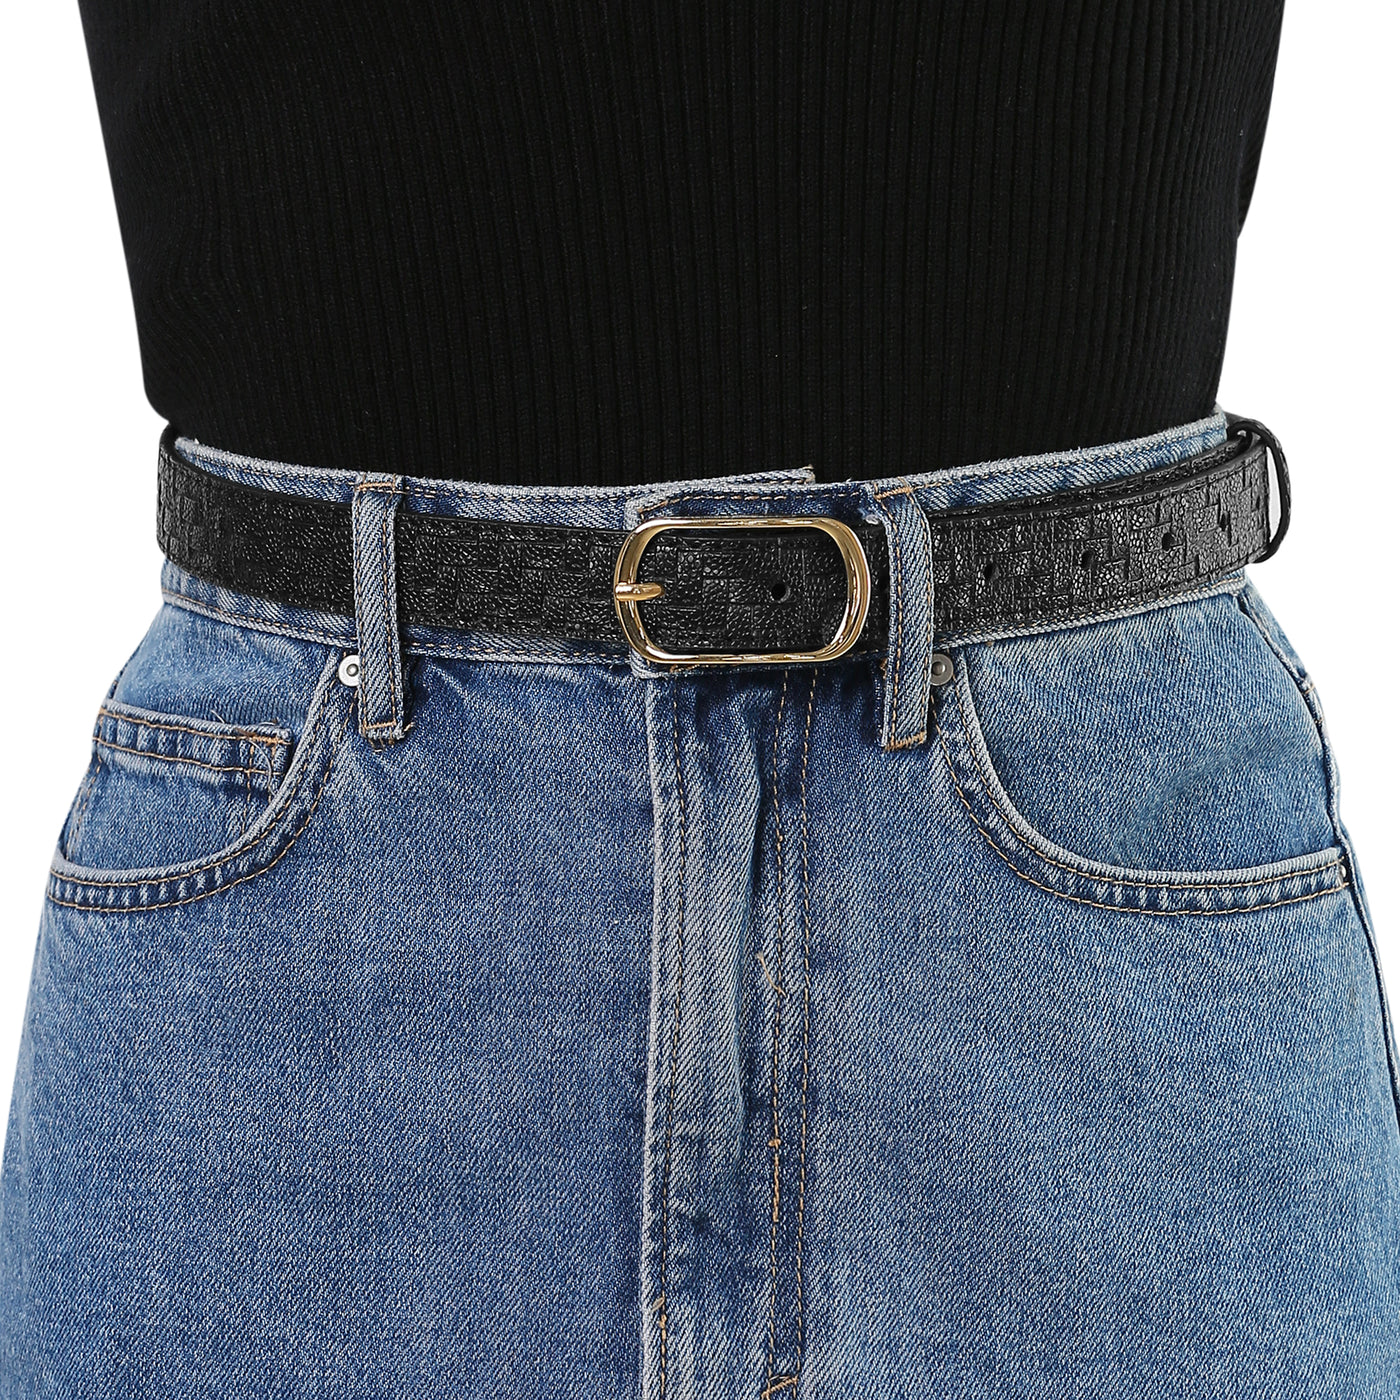 Allegra K Faux Leather Metal Pin Buckle Woven Waist Jeans Dress Belt